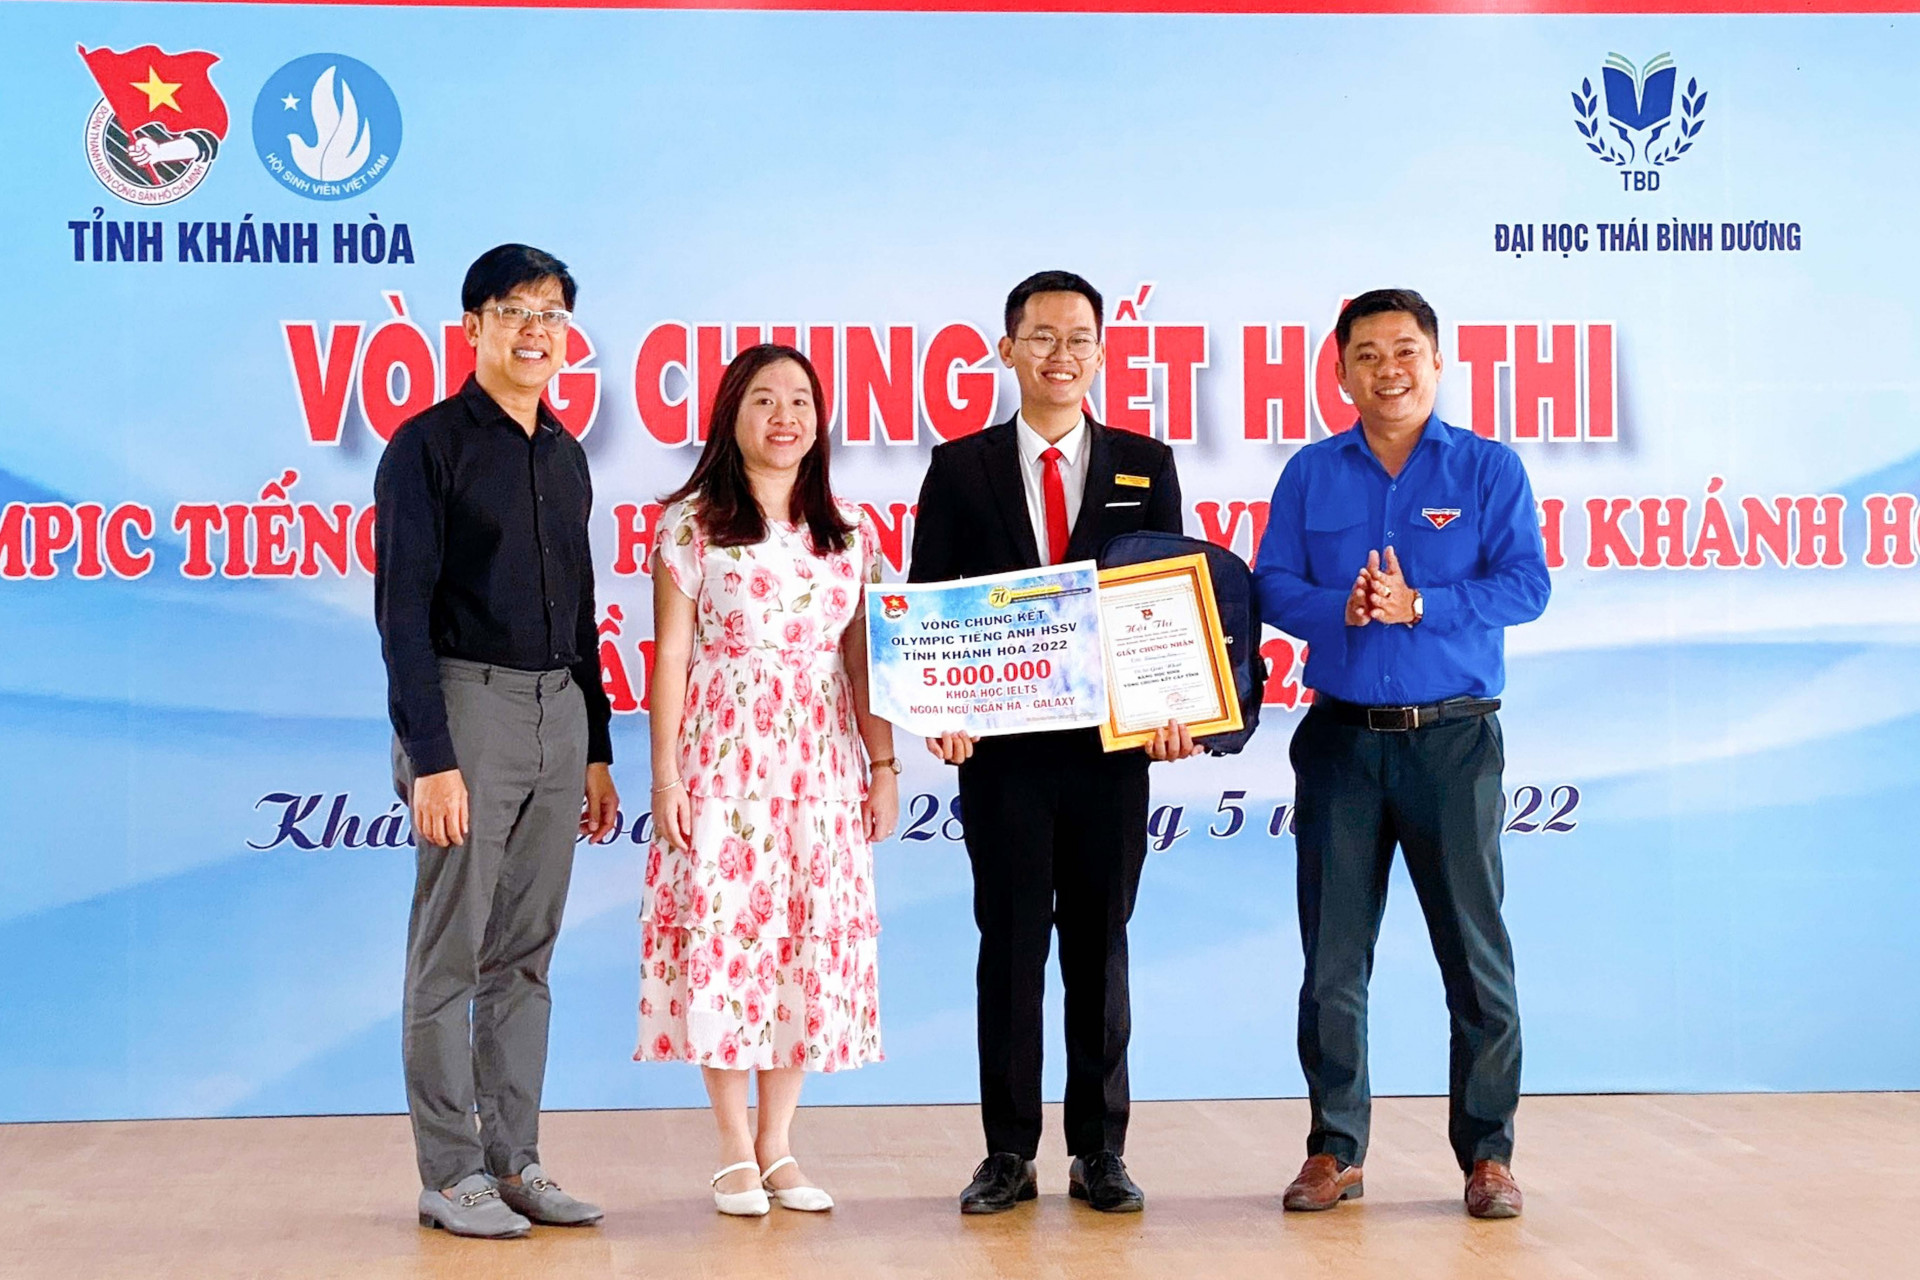 Ban tổ chức trao giải nhất cho thí sinh xuất sắc của bảng thi sinh viên